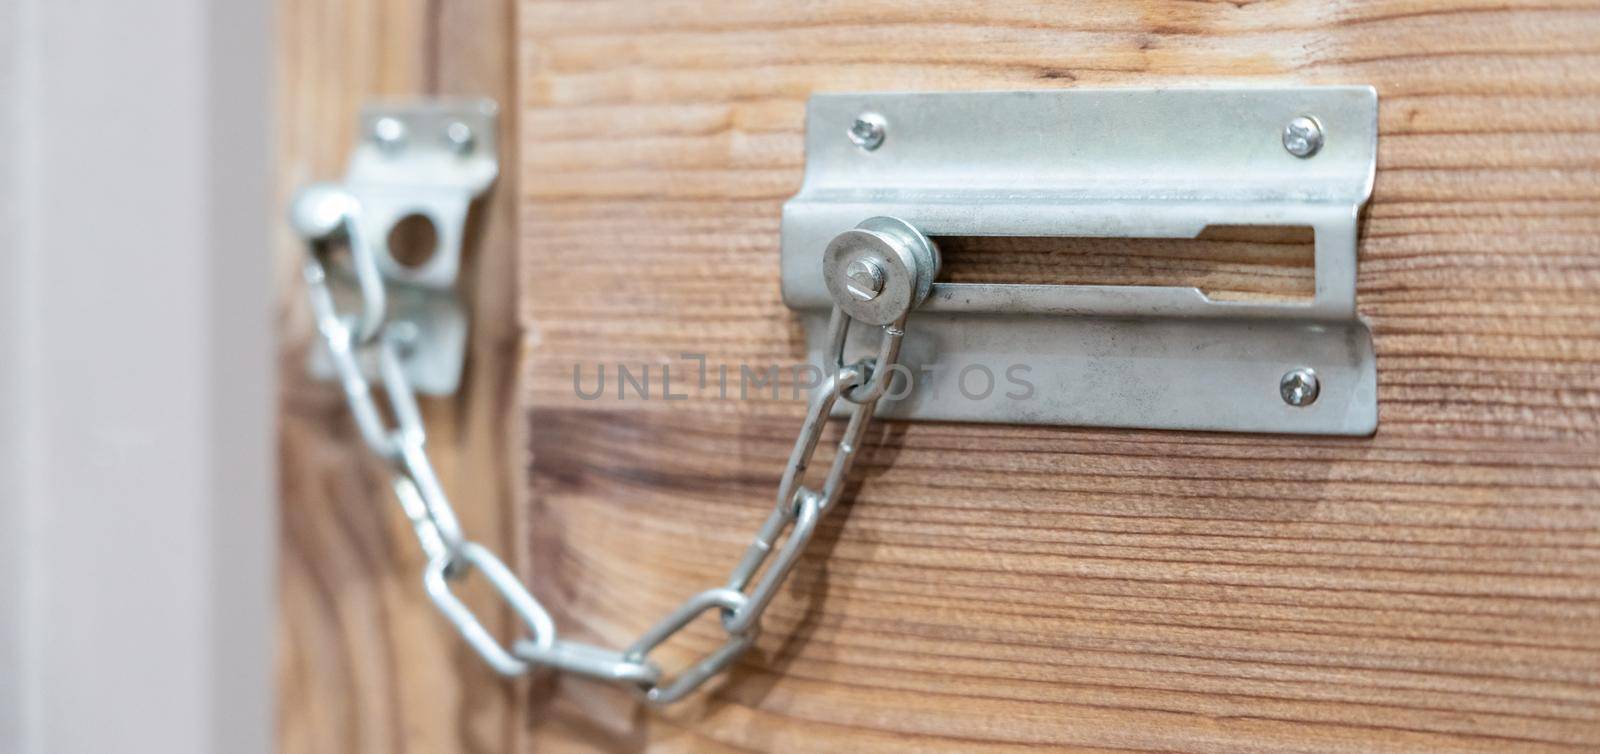 Close up of security door chain on a wooden door